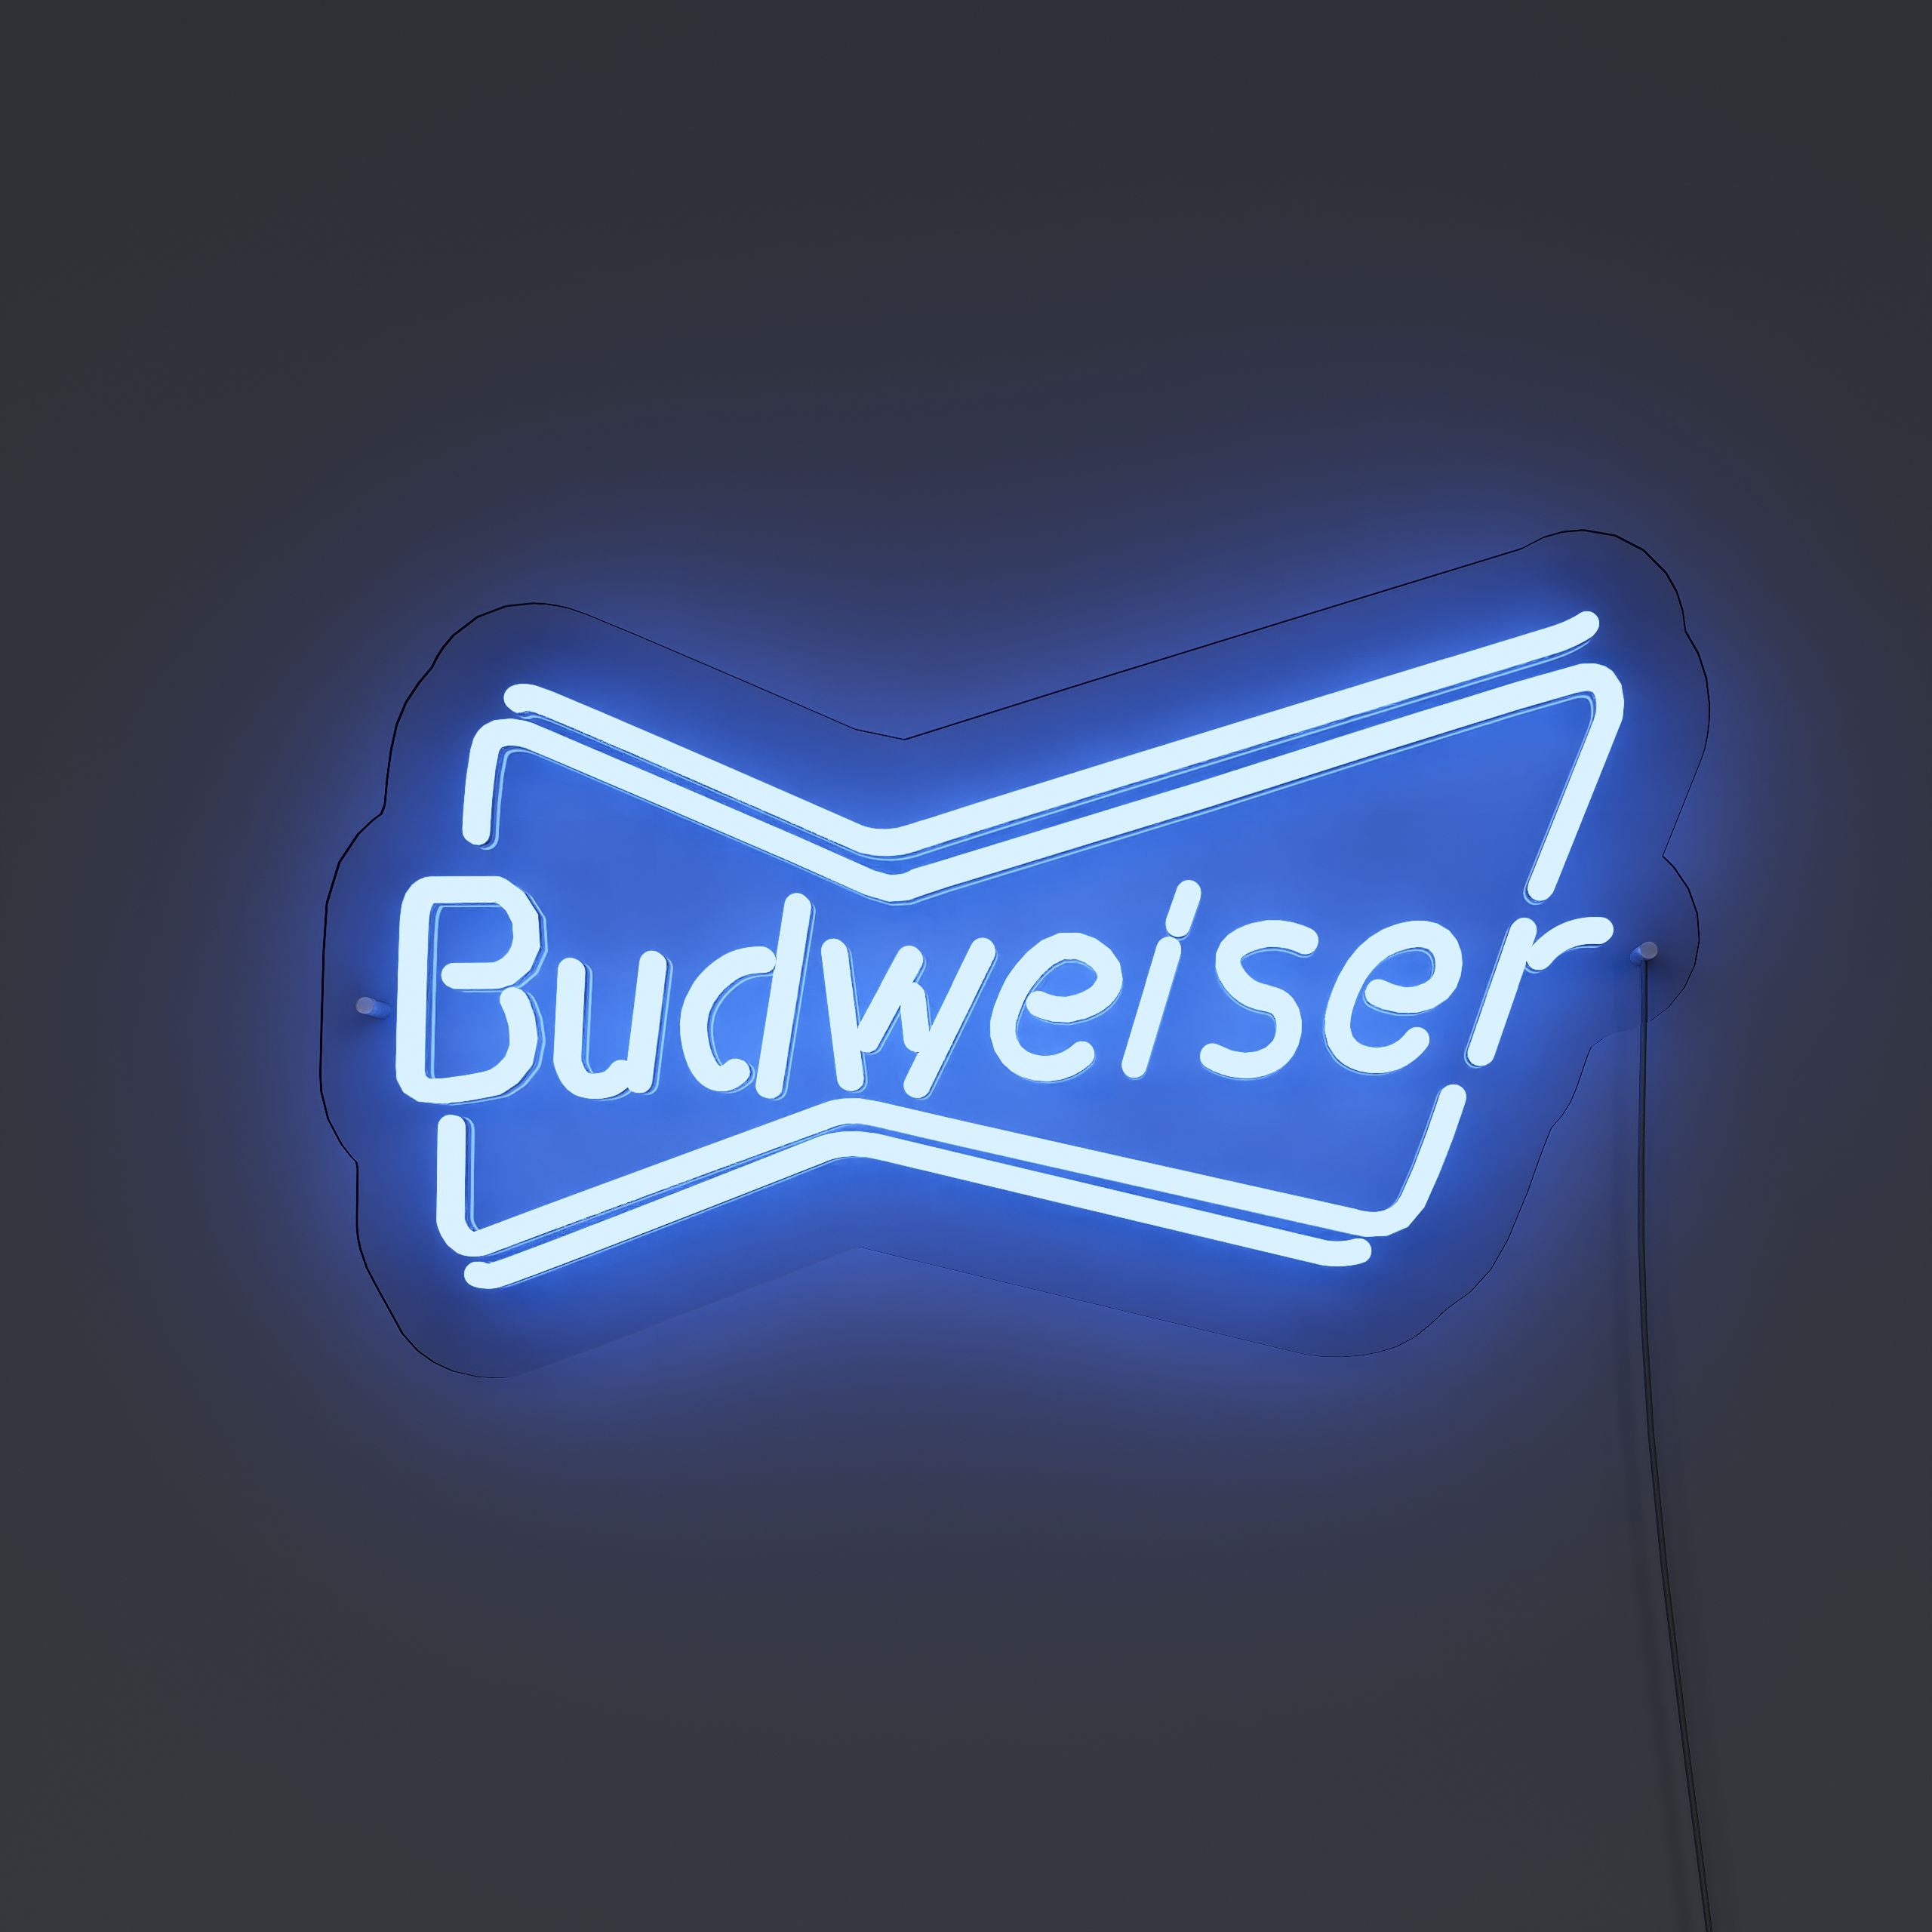 budweiser-neon-sign-DarkBlue-Neon-sign-Lite